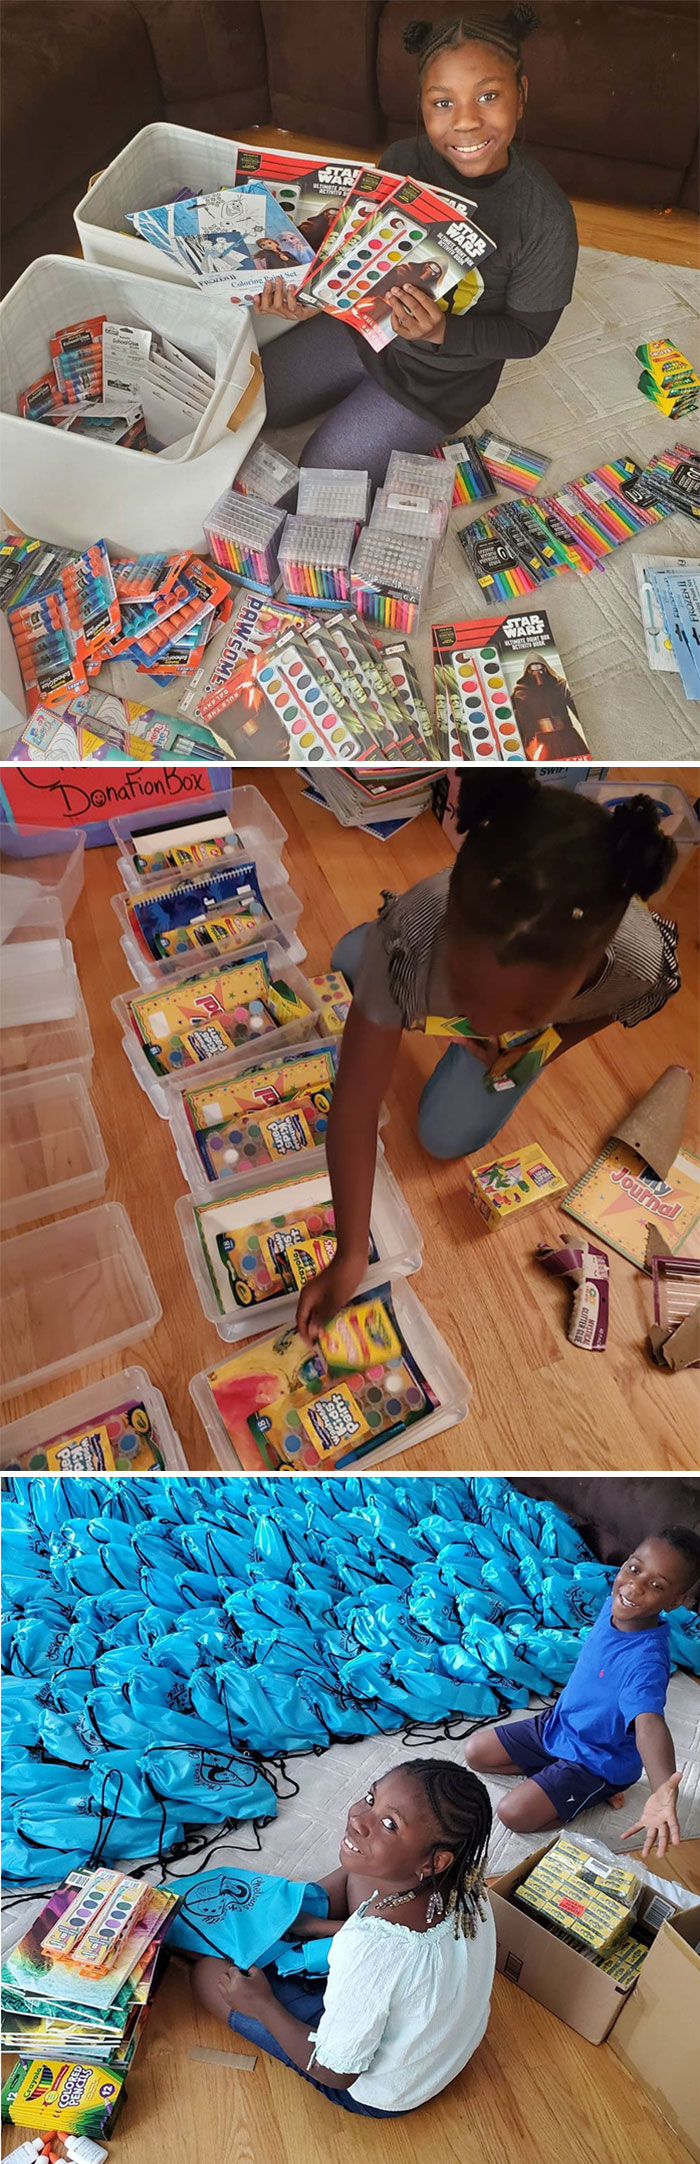 Chelsea, de 11 años, crea kits de arte para niños que no tienen acceso a materiales artísticos, con el fin de enseñarles que el arte es un comienzo para sanar, expresarse y comunicarse